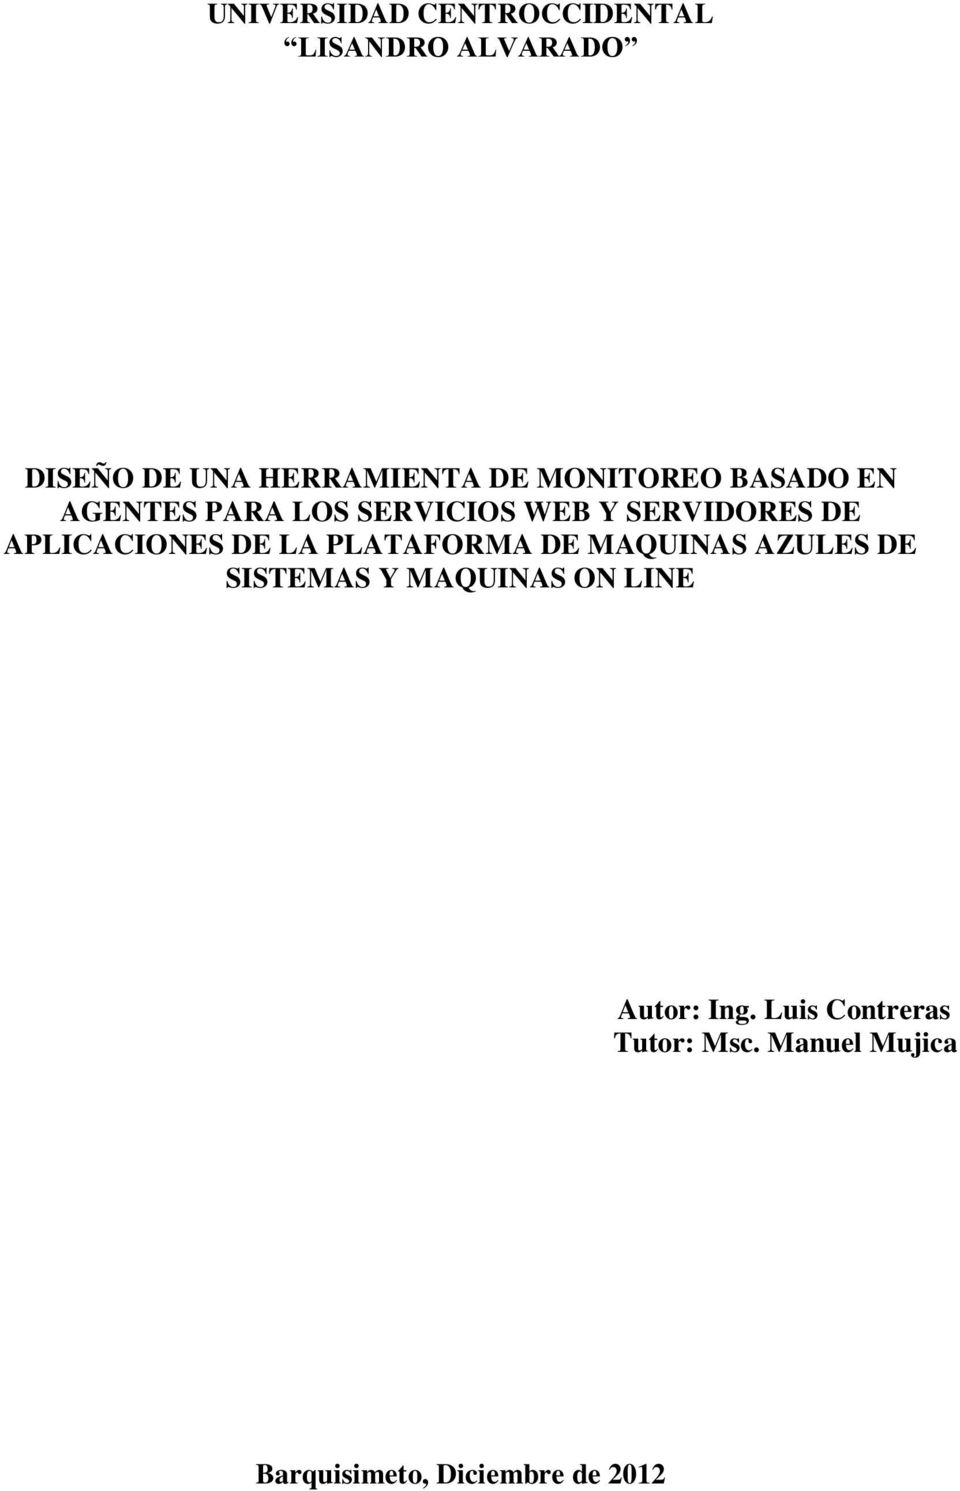 APLICACIONES DE LA PLATAFORMA DE MAQUINAS AZULES DE SISTEMAS Y MAQUINAS ON